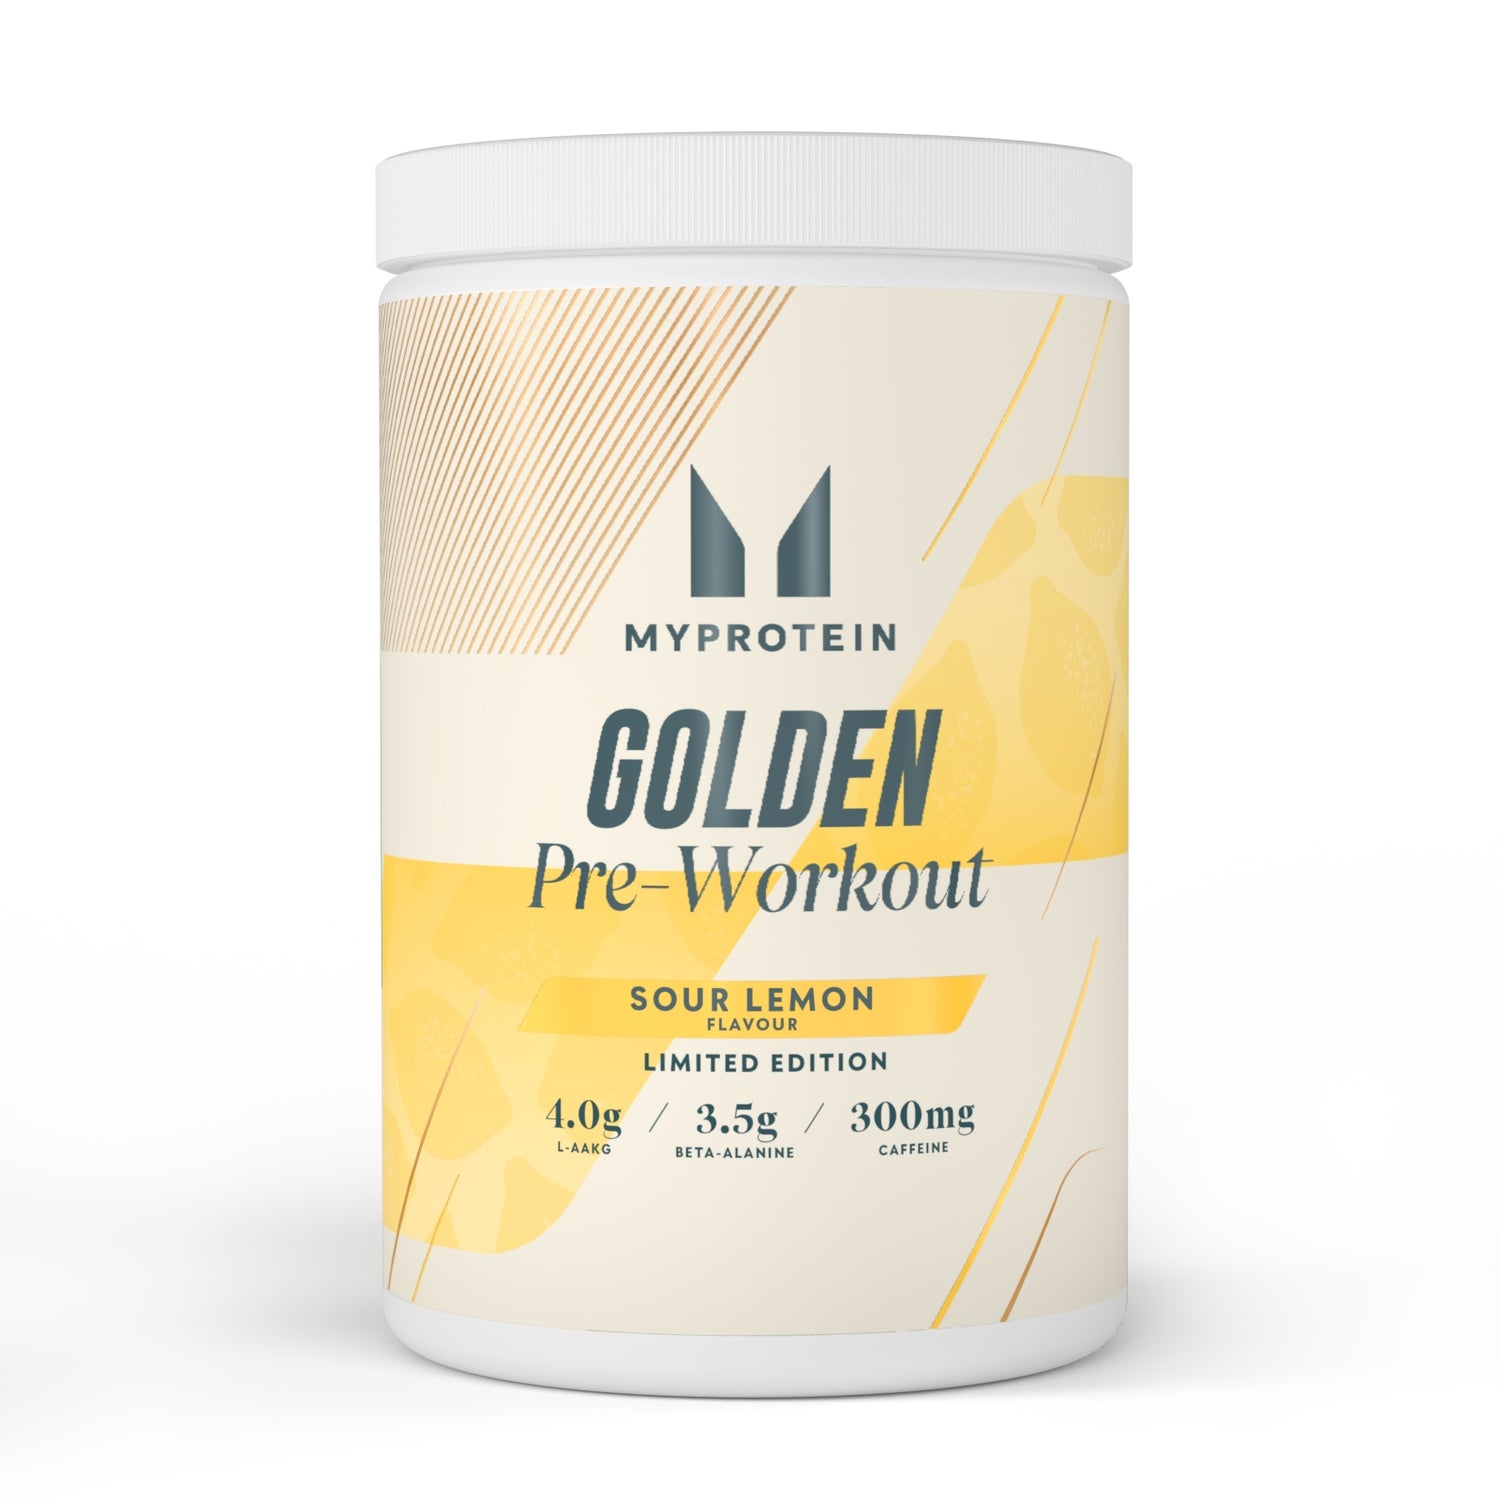 Golden Pre-Workout — Sour Lemon